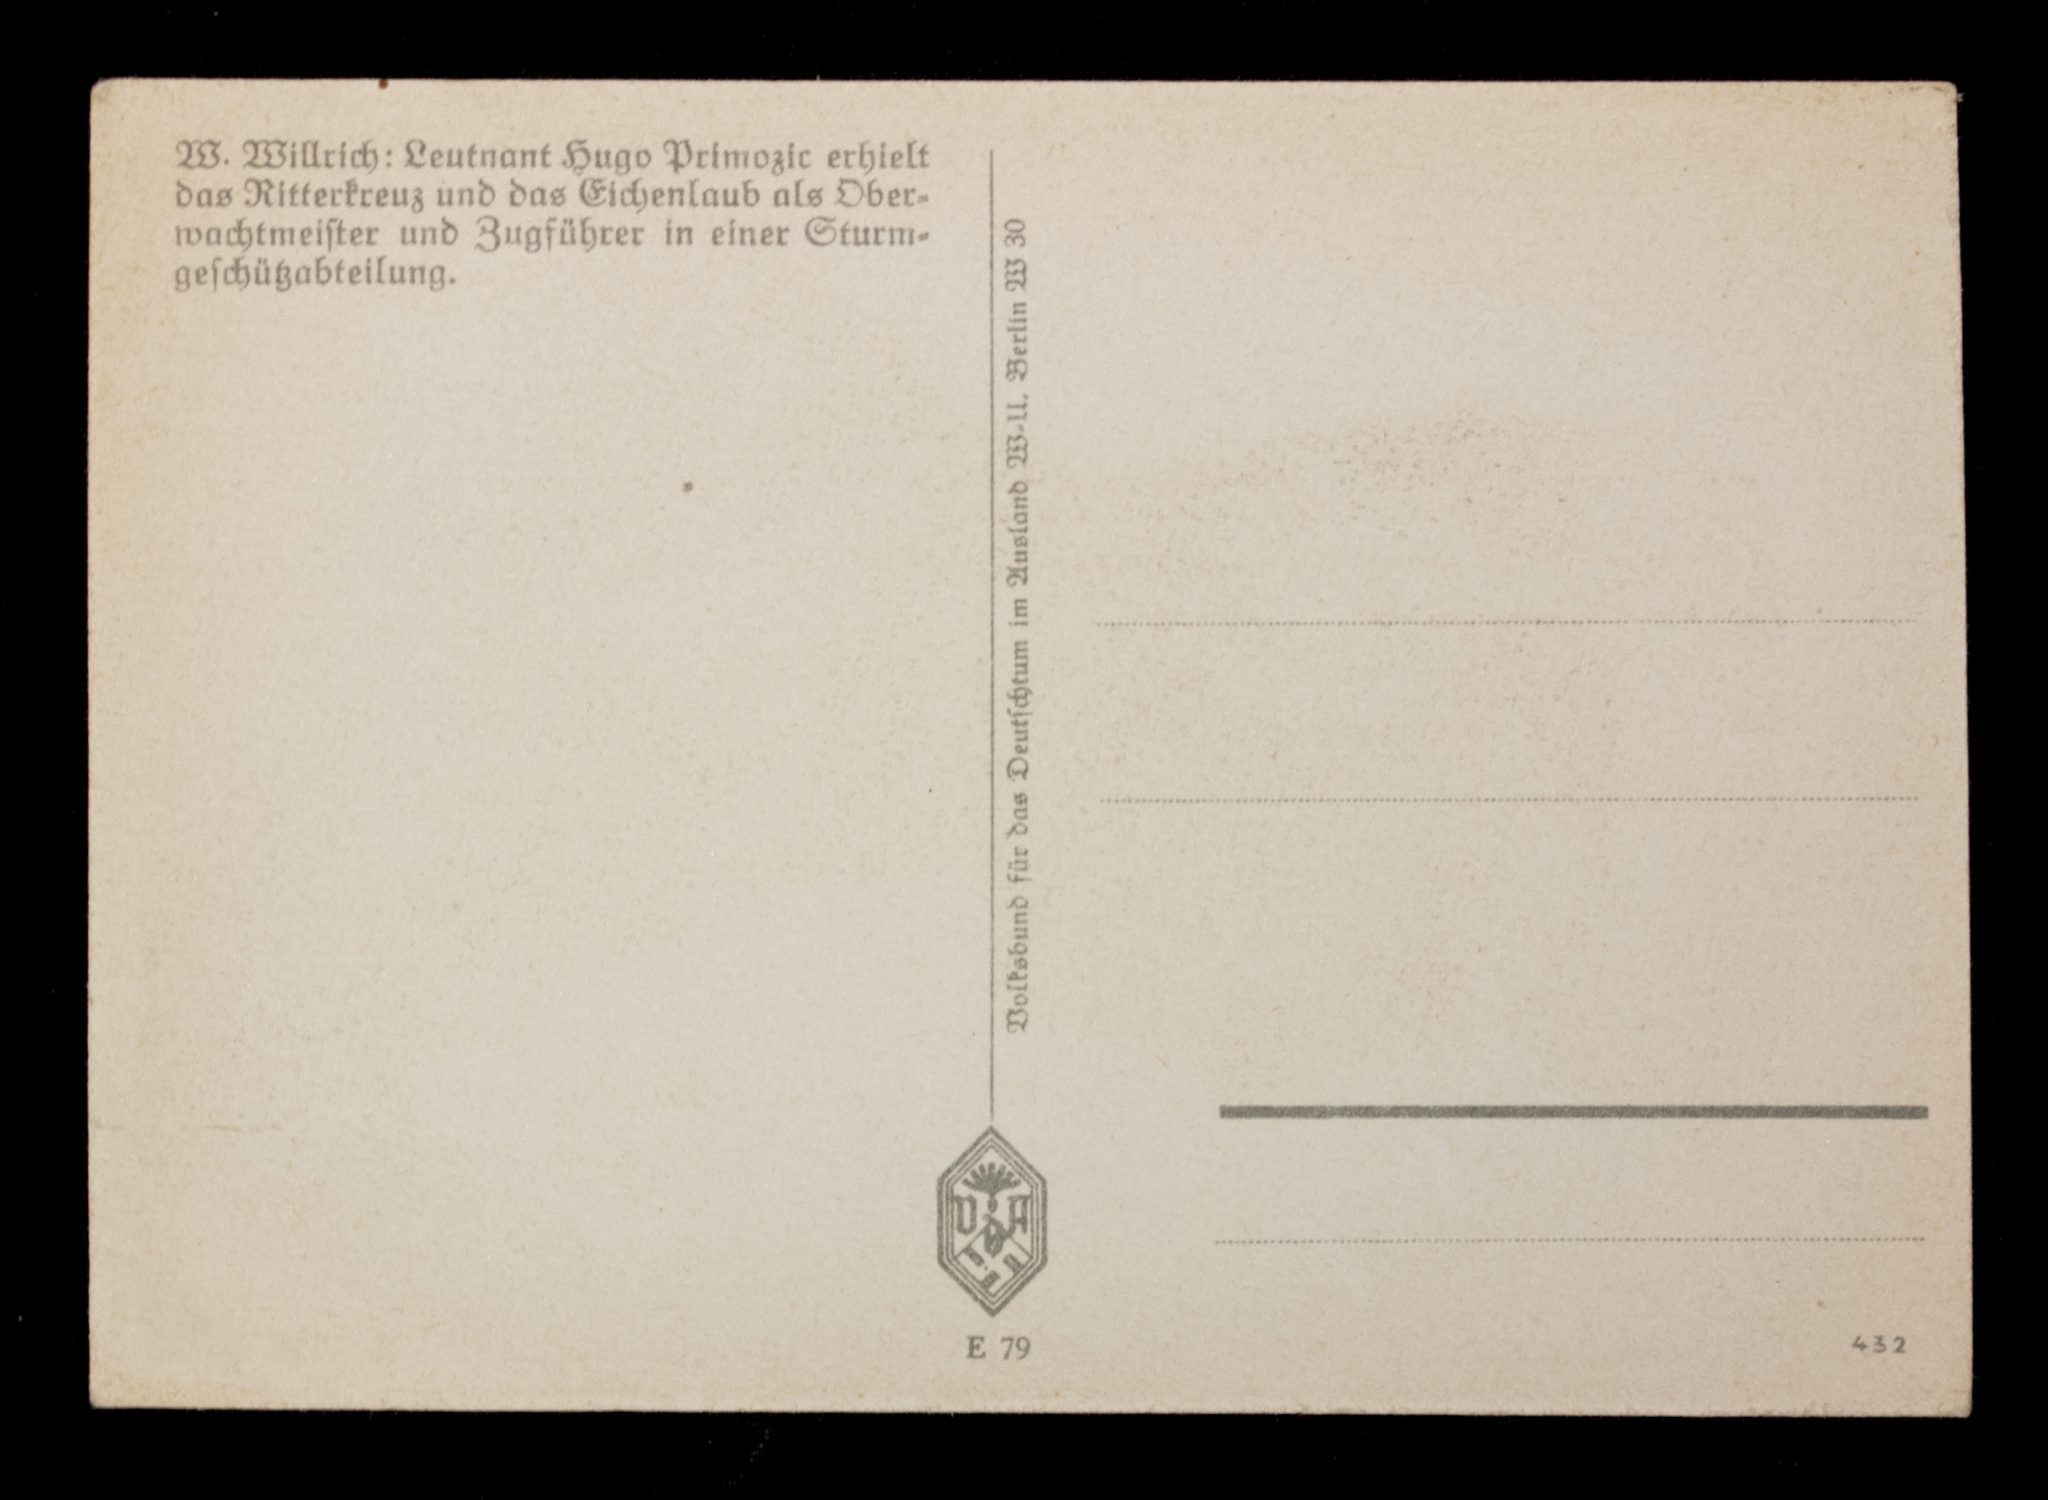 (Postcard) Willrich - Leutnant Hugo Primozic erhielt das Ritterkreuz und das Eichenlaub als Oberwachtmeister und Zugführer in einer Sturmgeschützabteilung